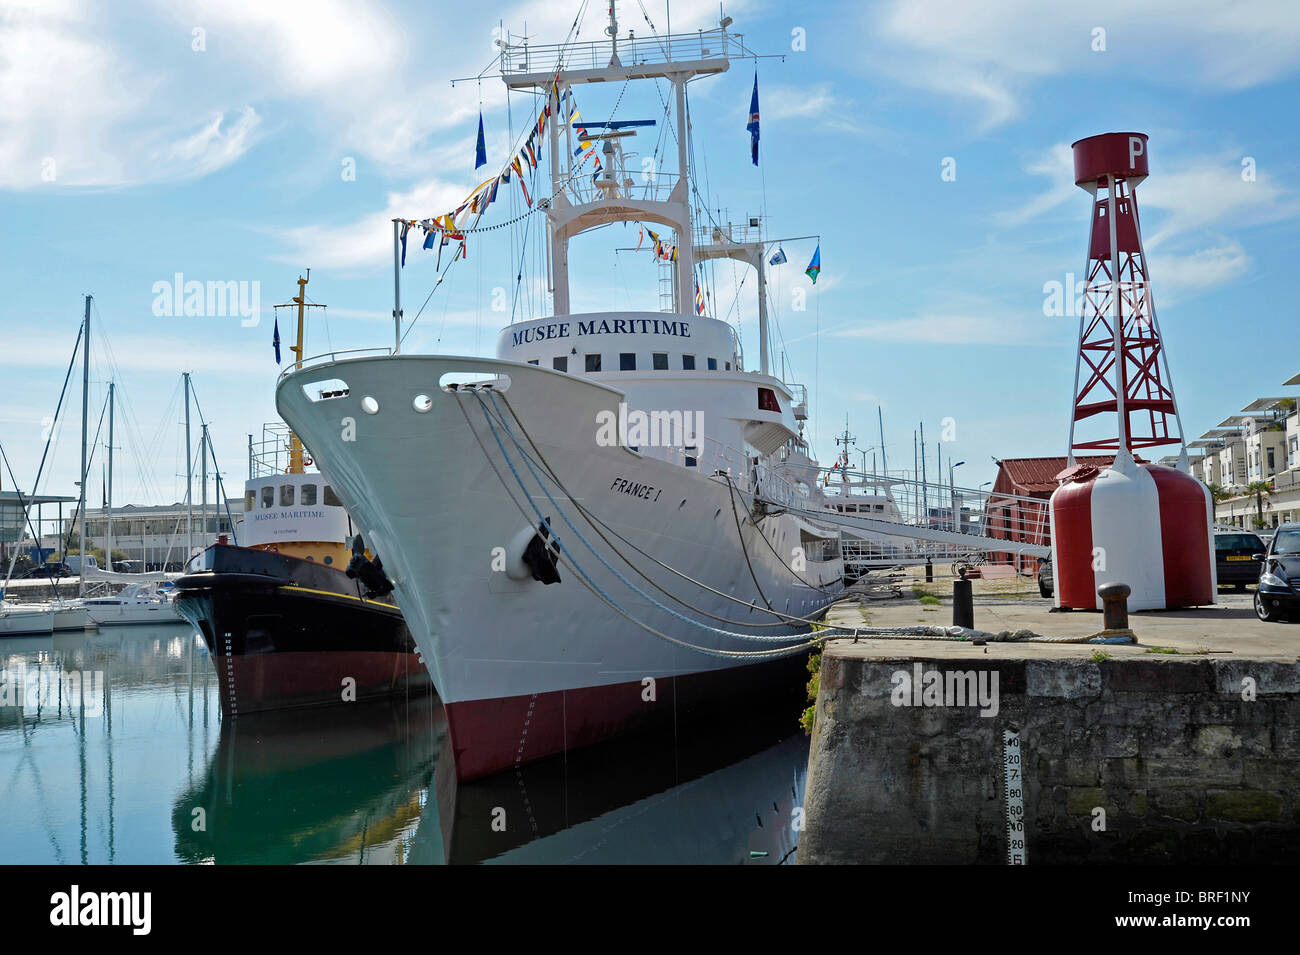 Vieux port La Rochelle musée maritime flottant Poitou Charentes France Banque D'Images